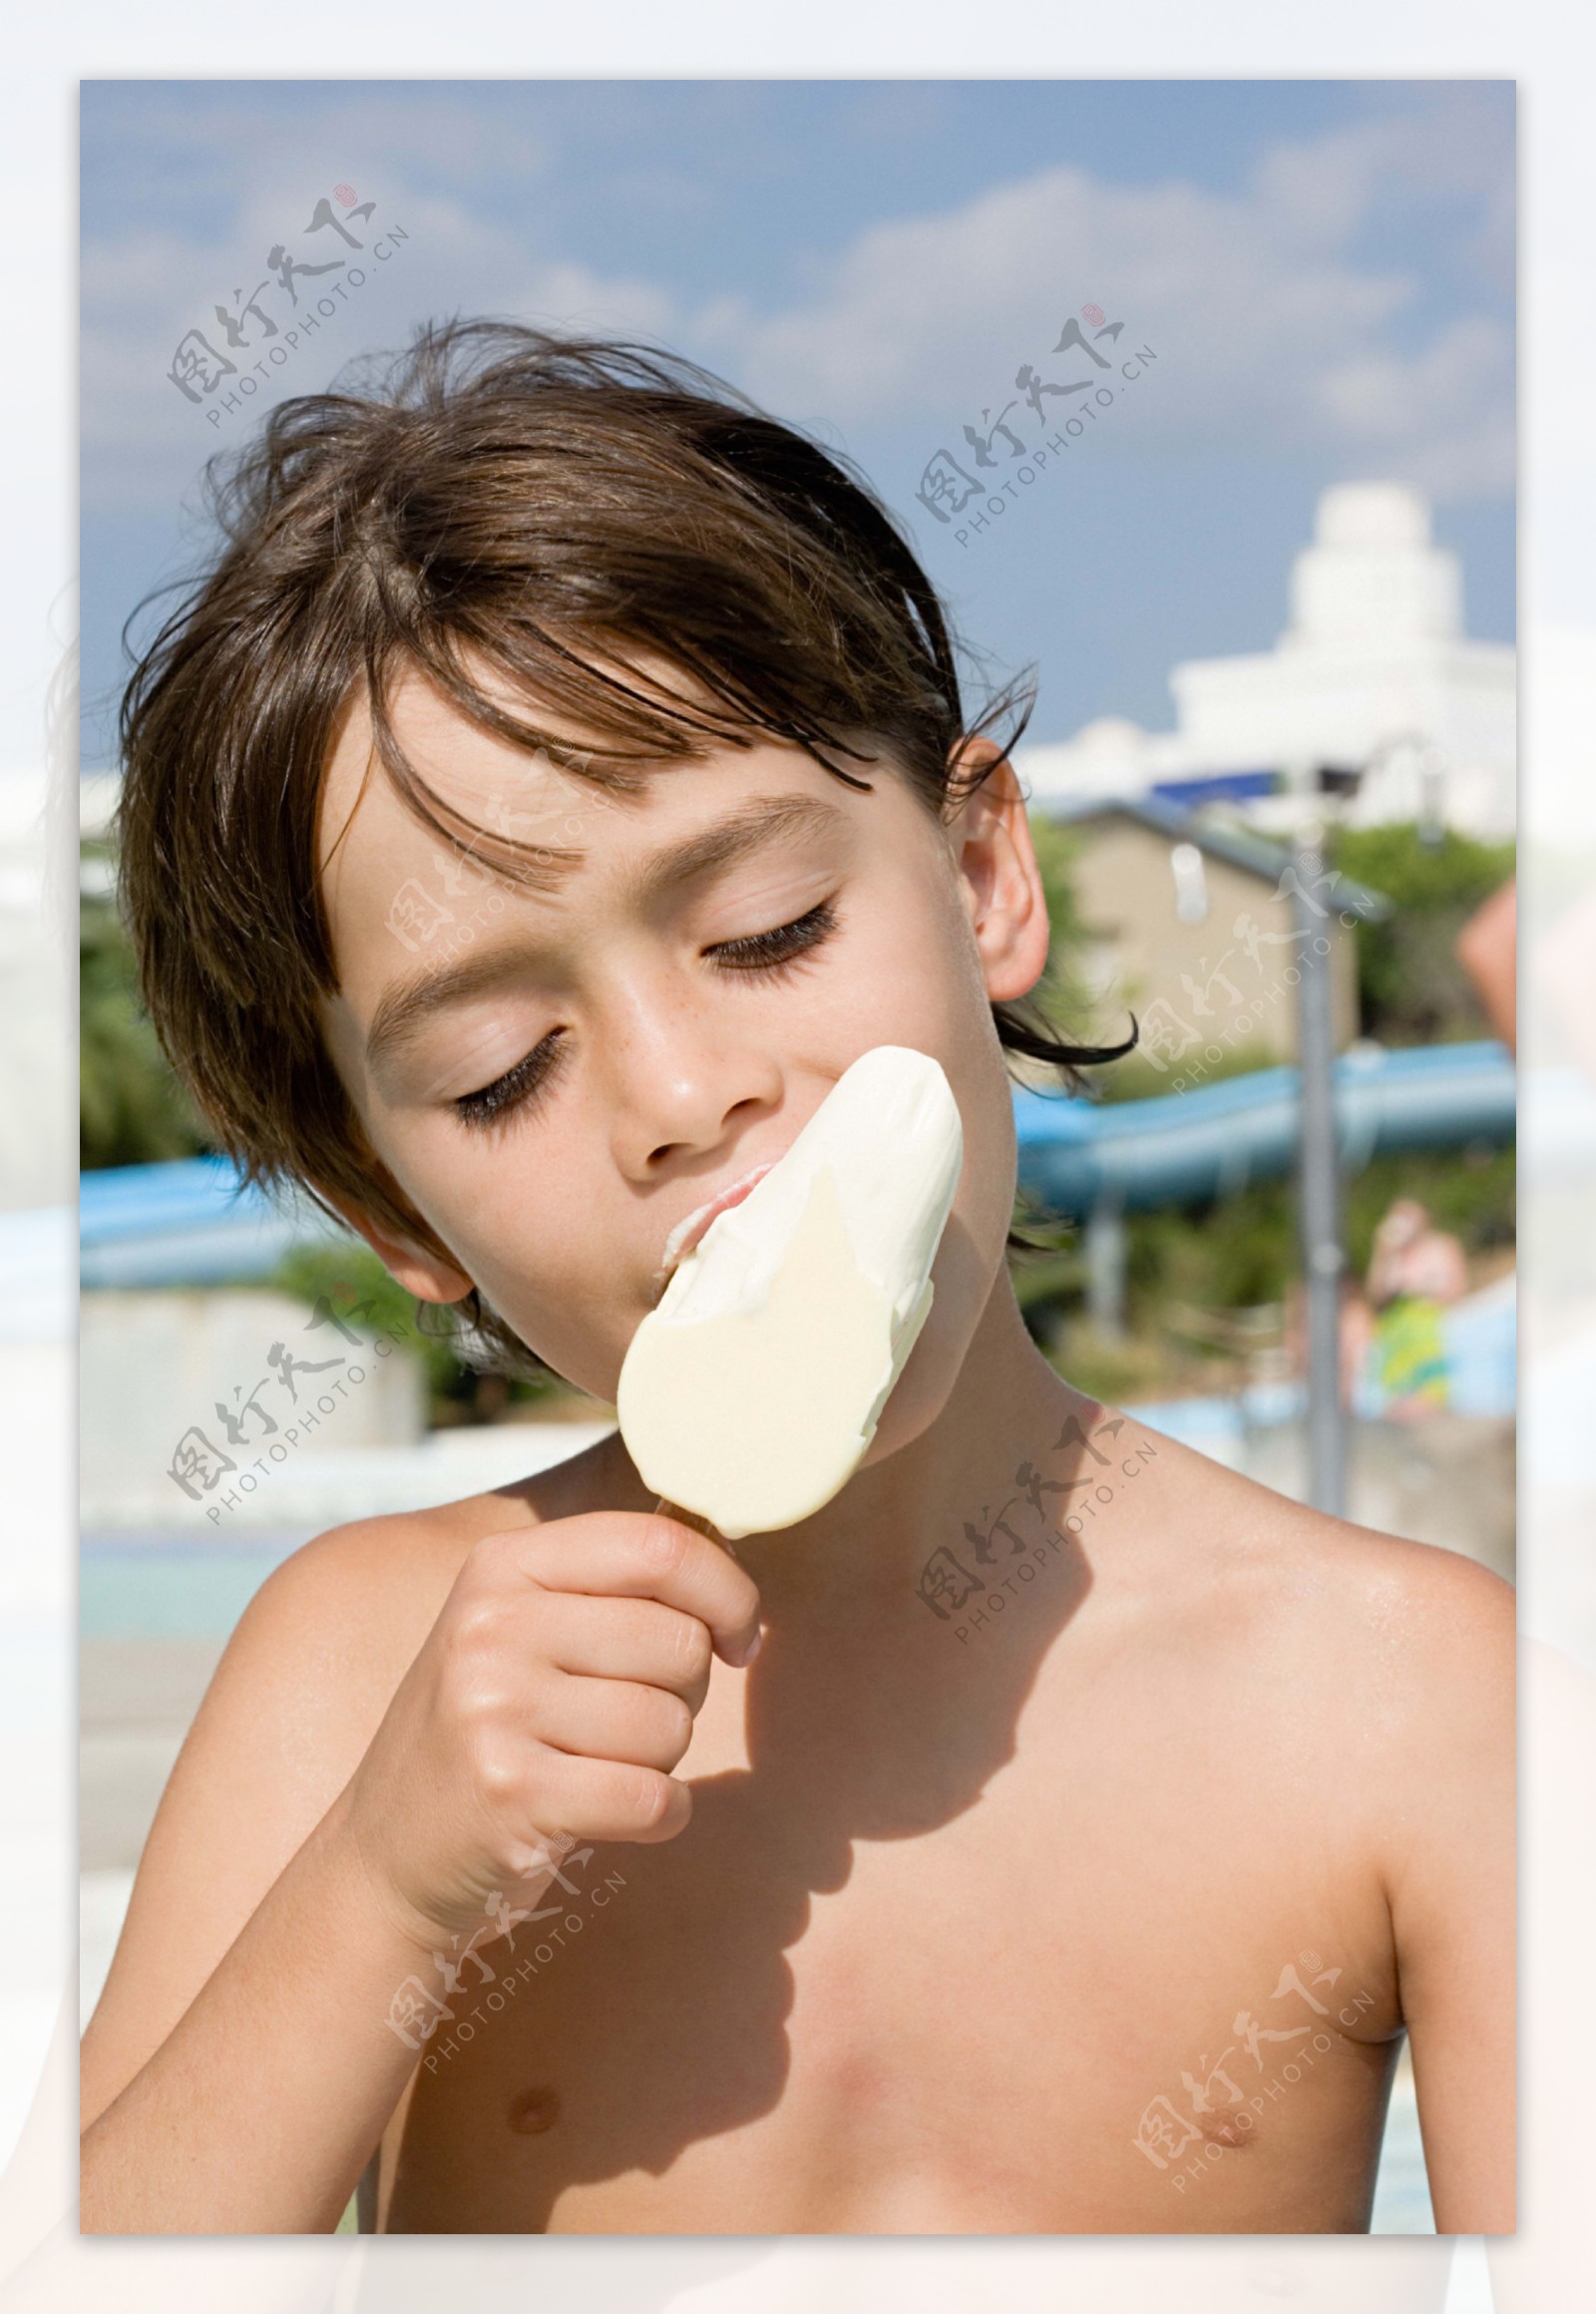 吃冰棒的小男孩图片